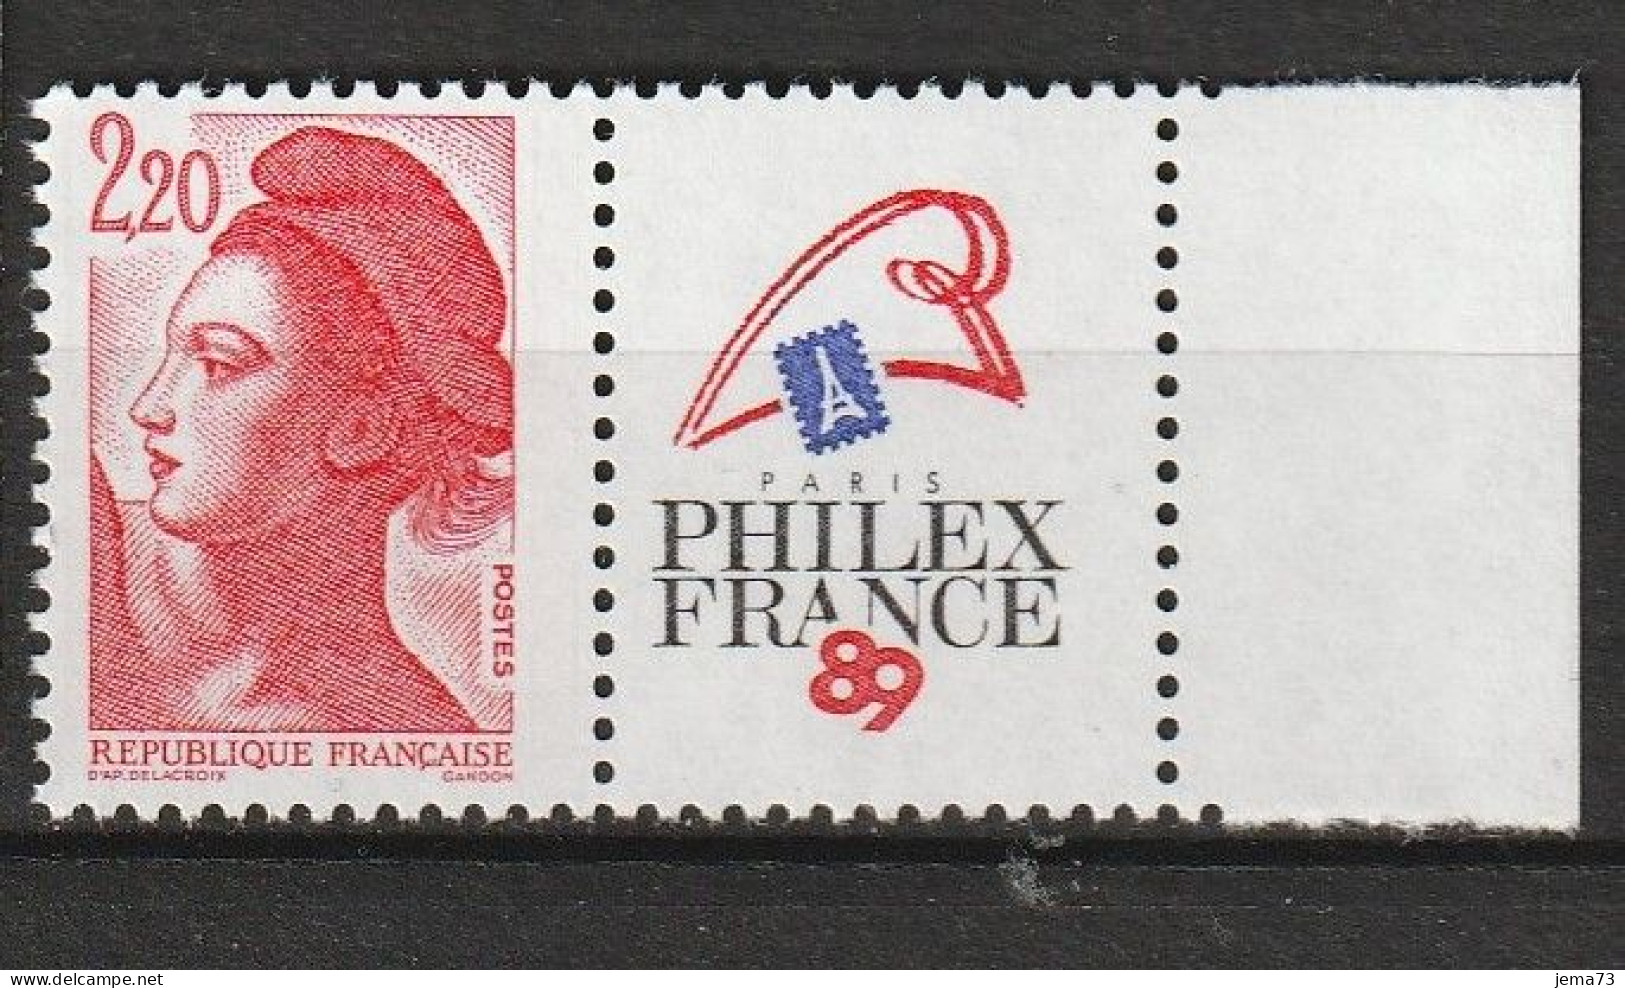 N° 2461 Philexfrance 89Exposition Philatélique Mondiale à Paris; Beau Timbre Neuf - Unused Stamps